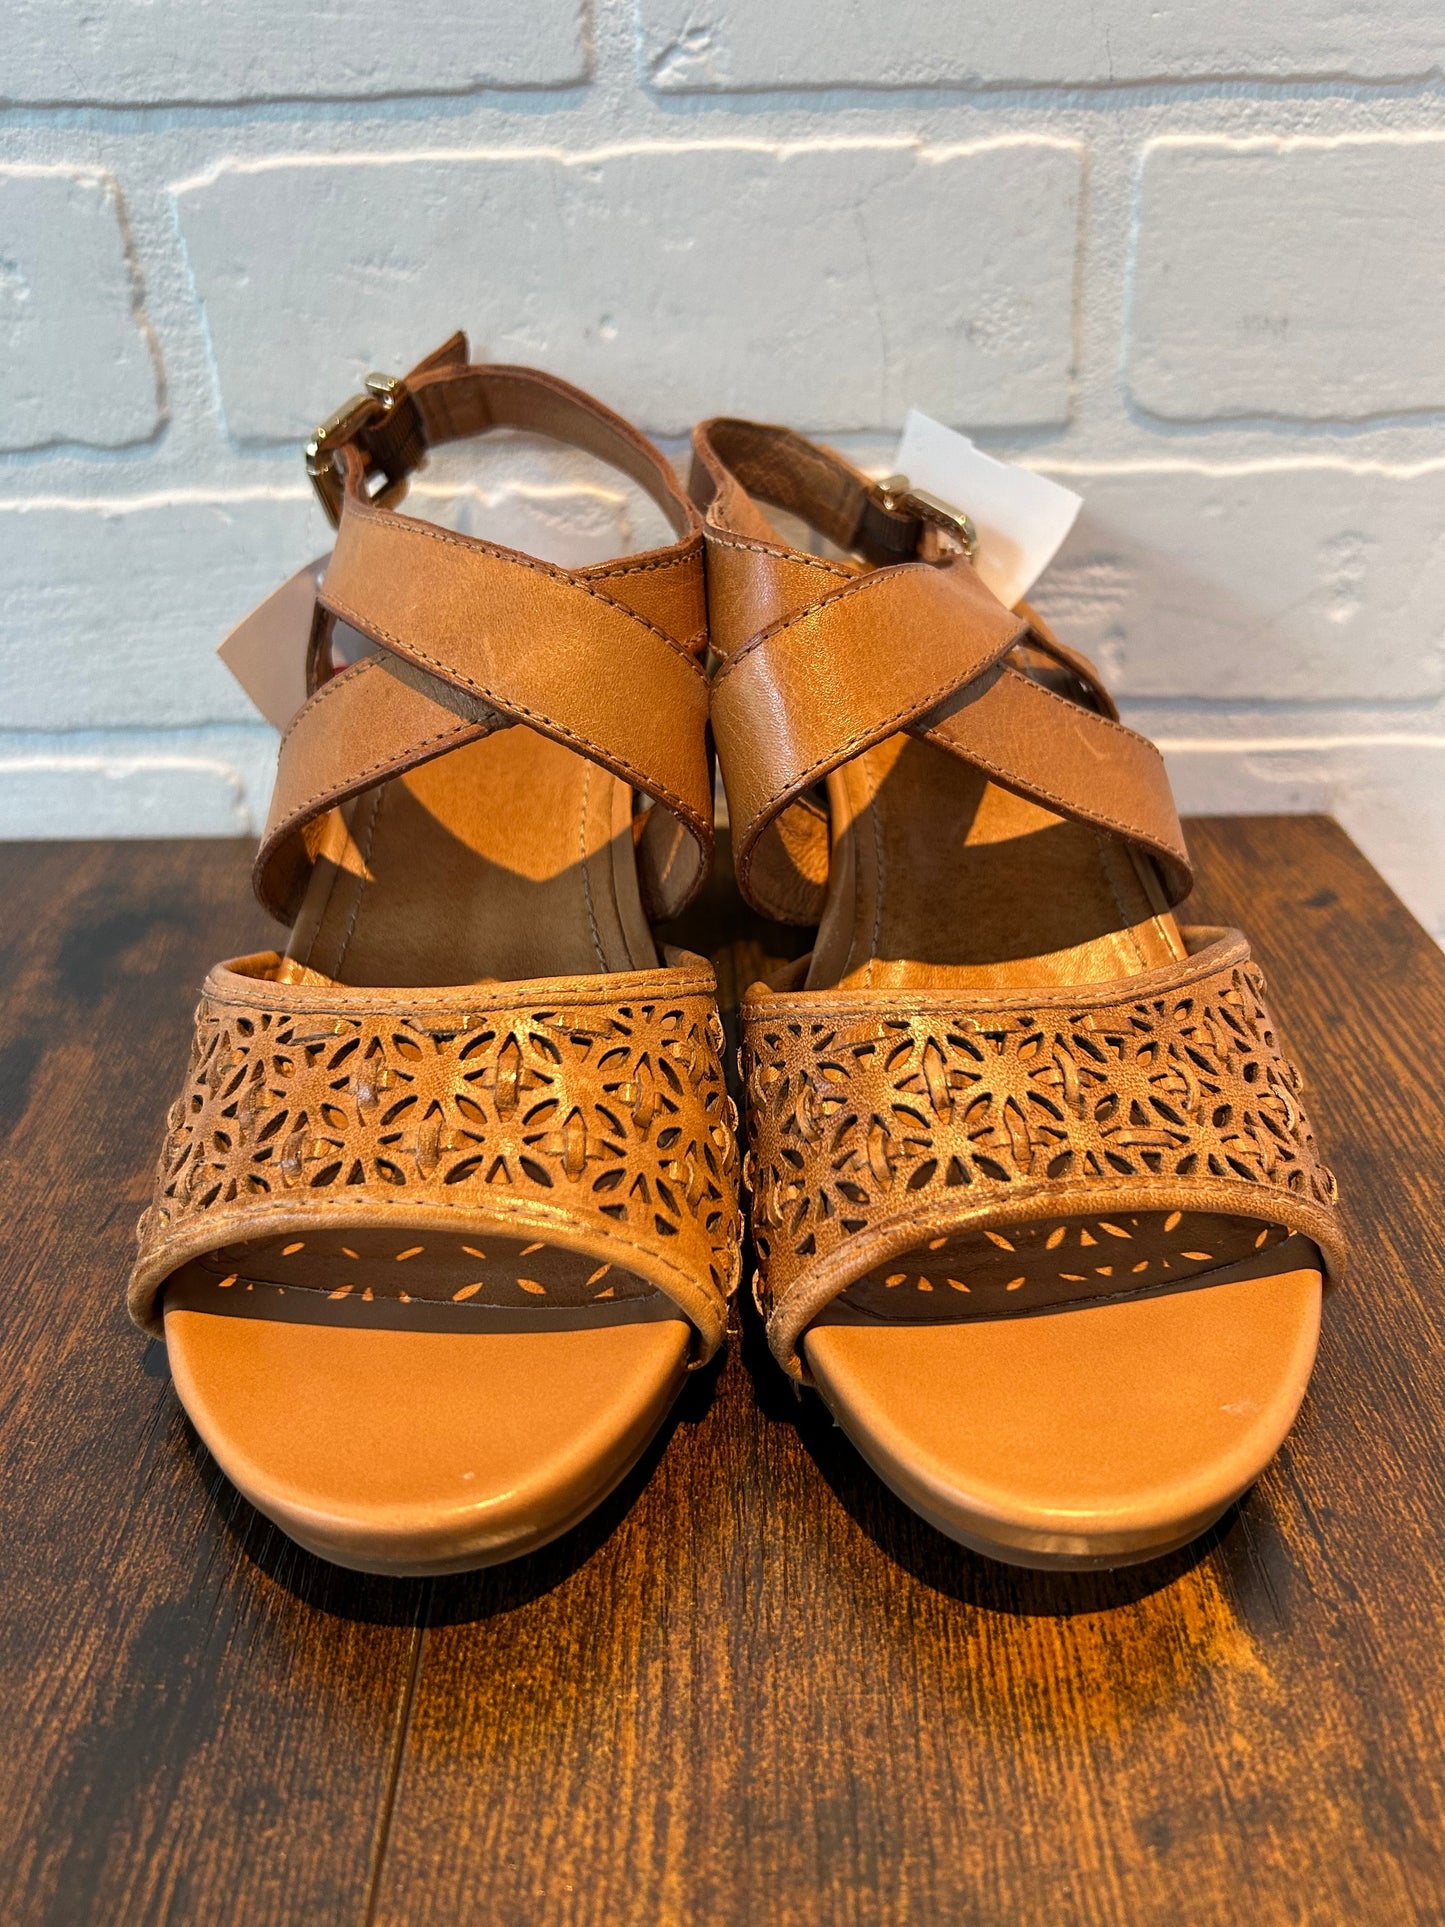 Tan Sandals Heels Wedge Nurture, Size 6.5